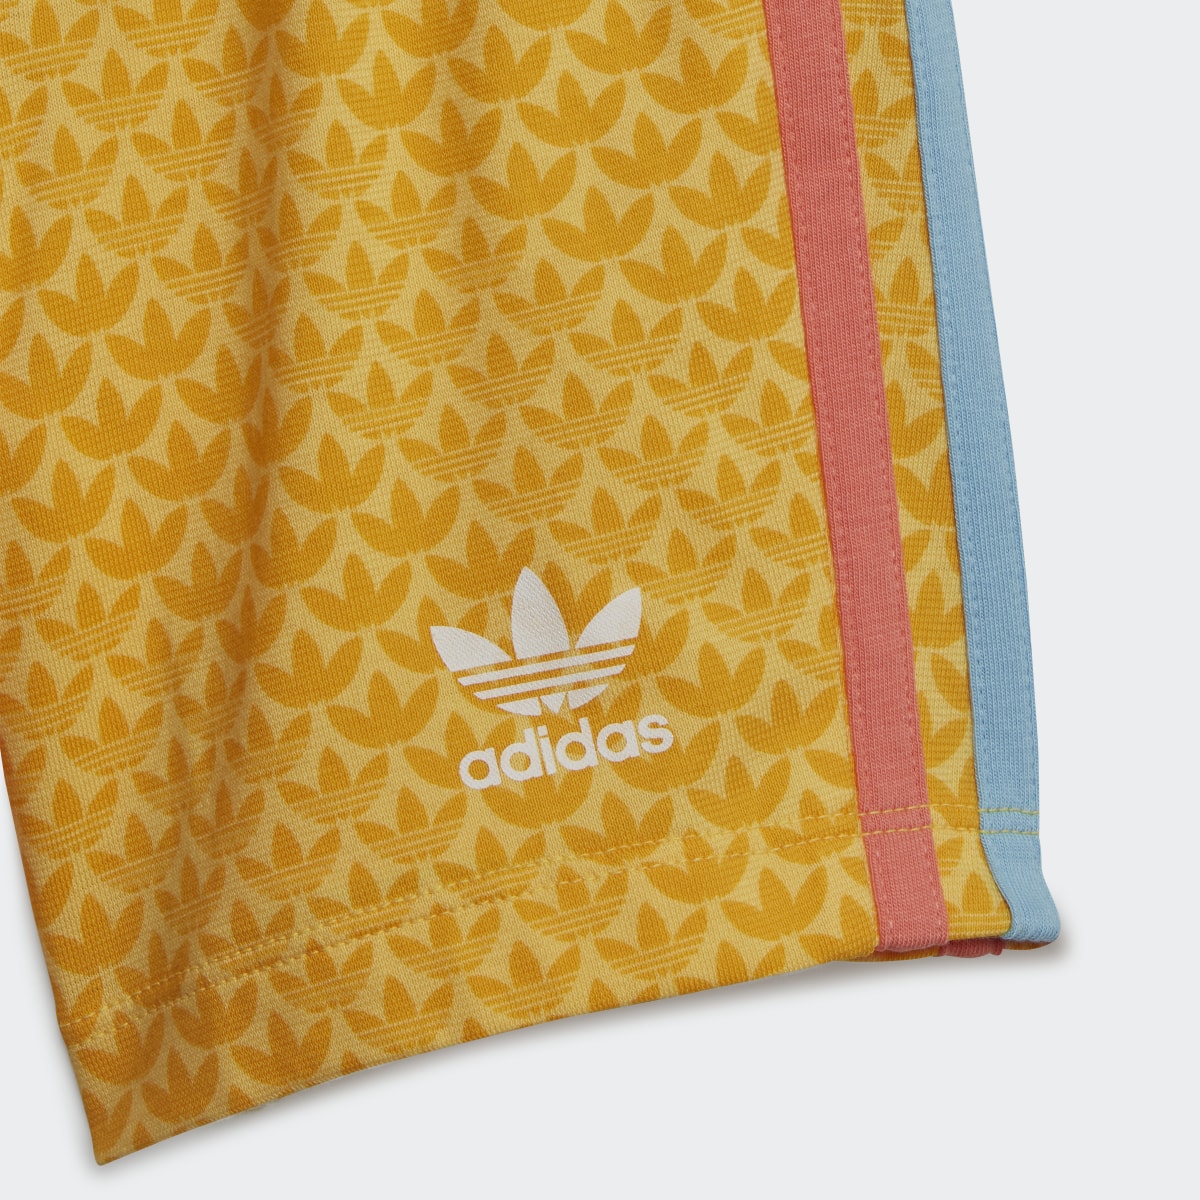 Adidas Graphic Print Shorts and Tee Set. 9